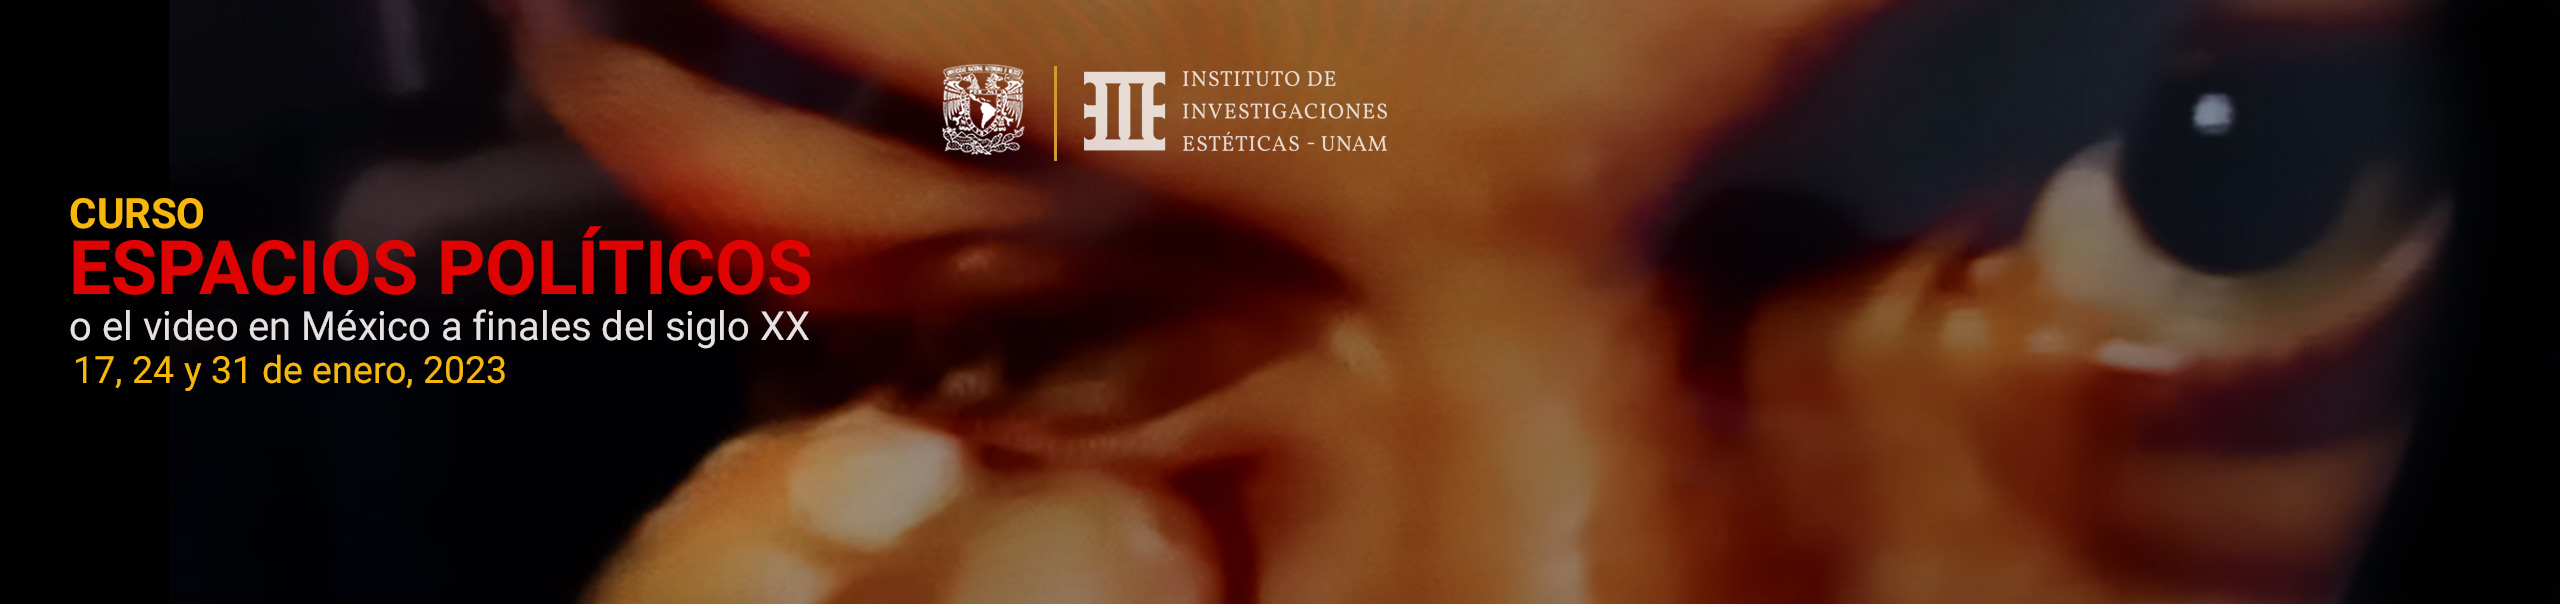 Curso Espacios políticos o el video en México a finales del siglo XX: documento y crítica social e institucional